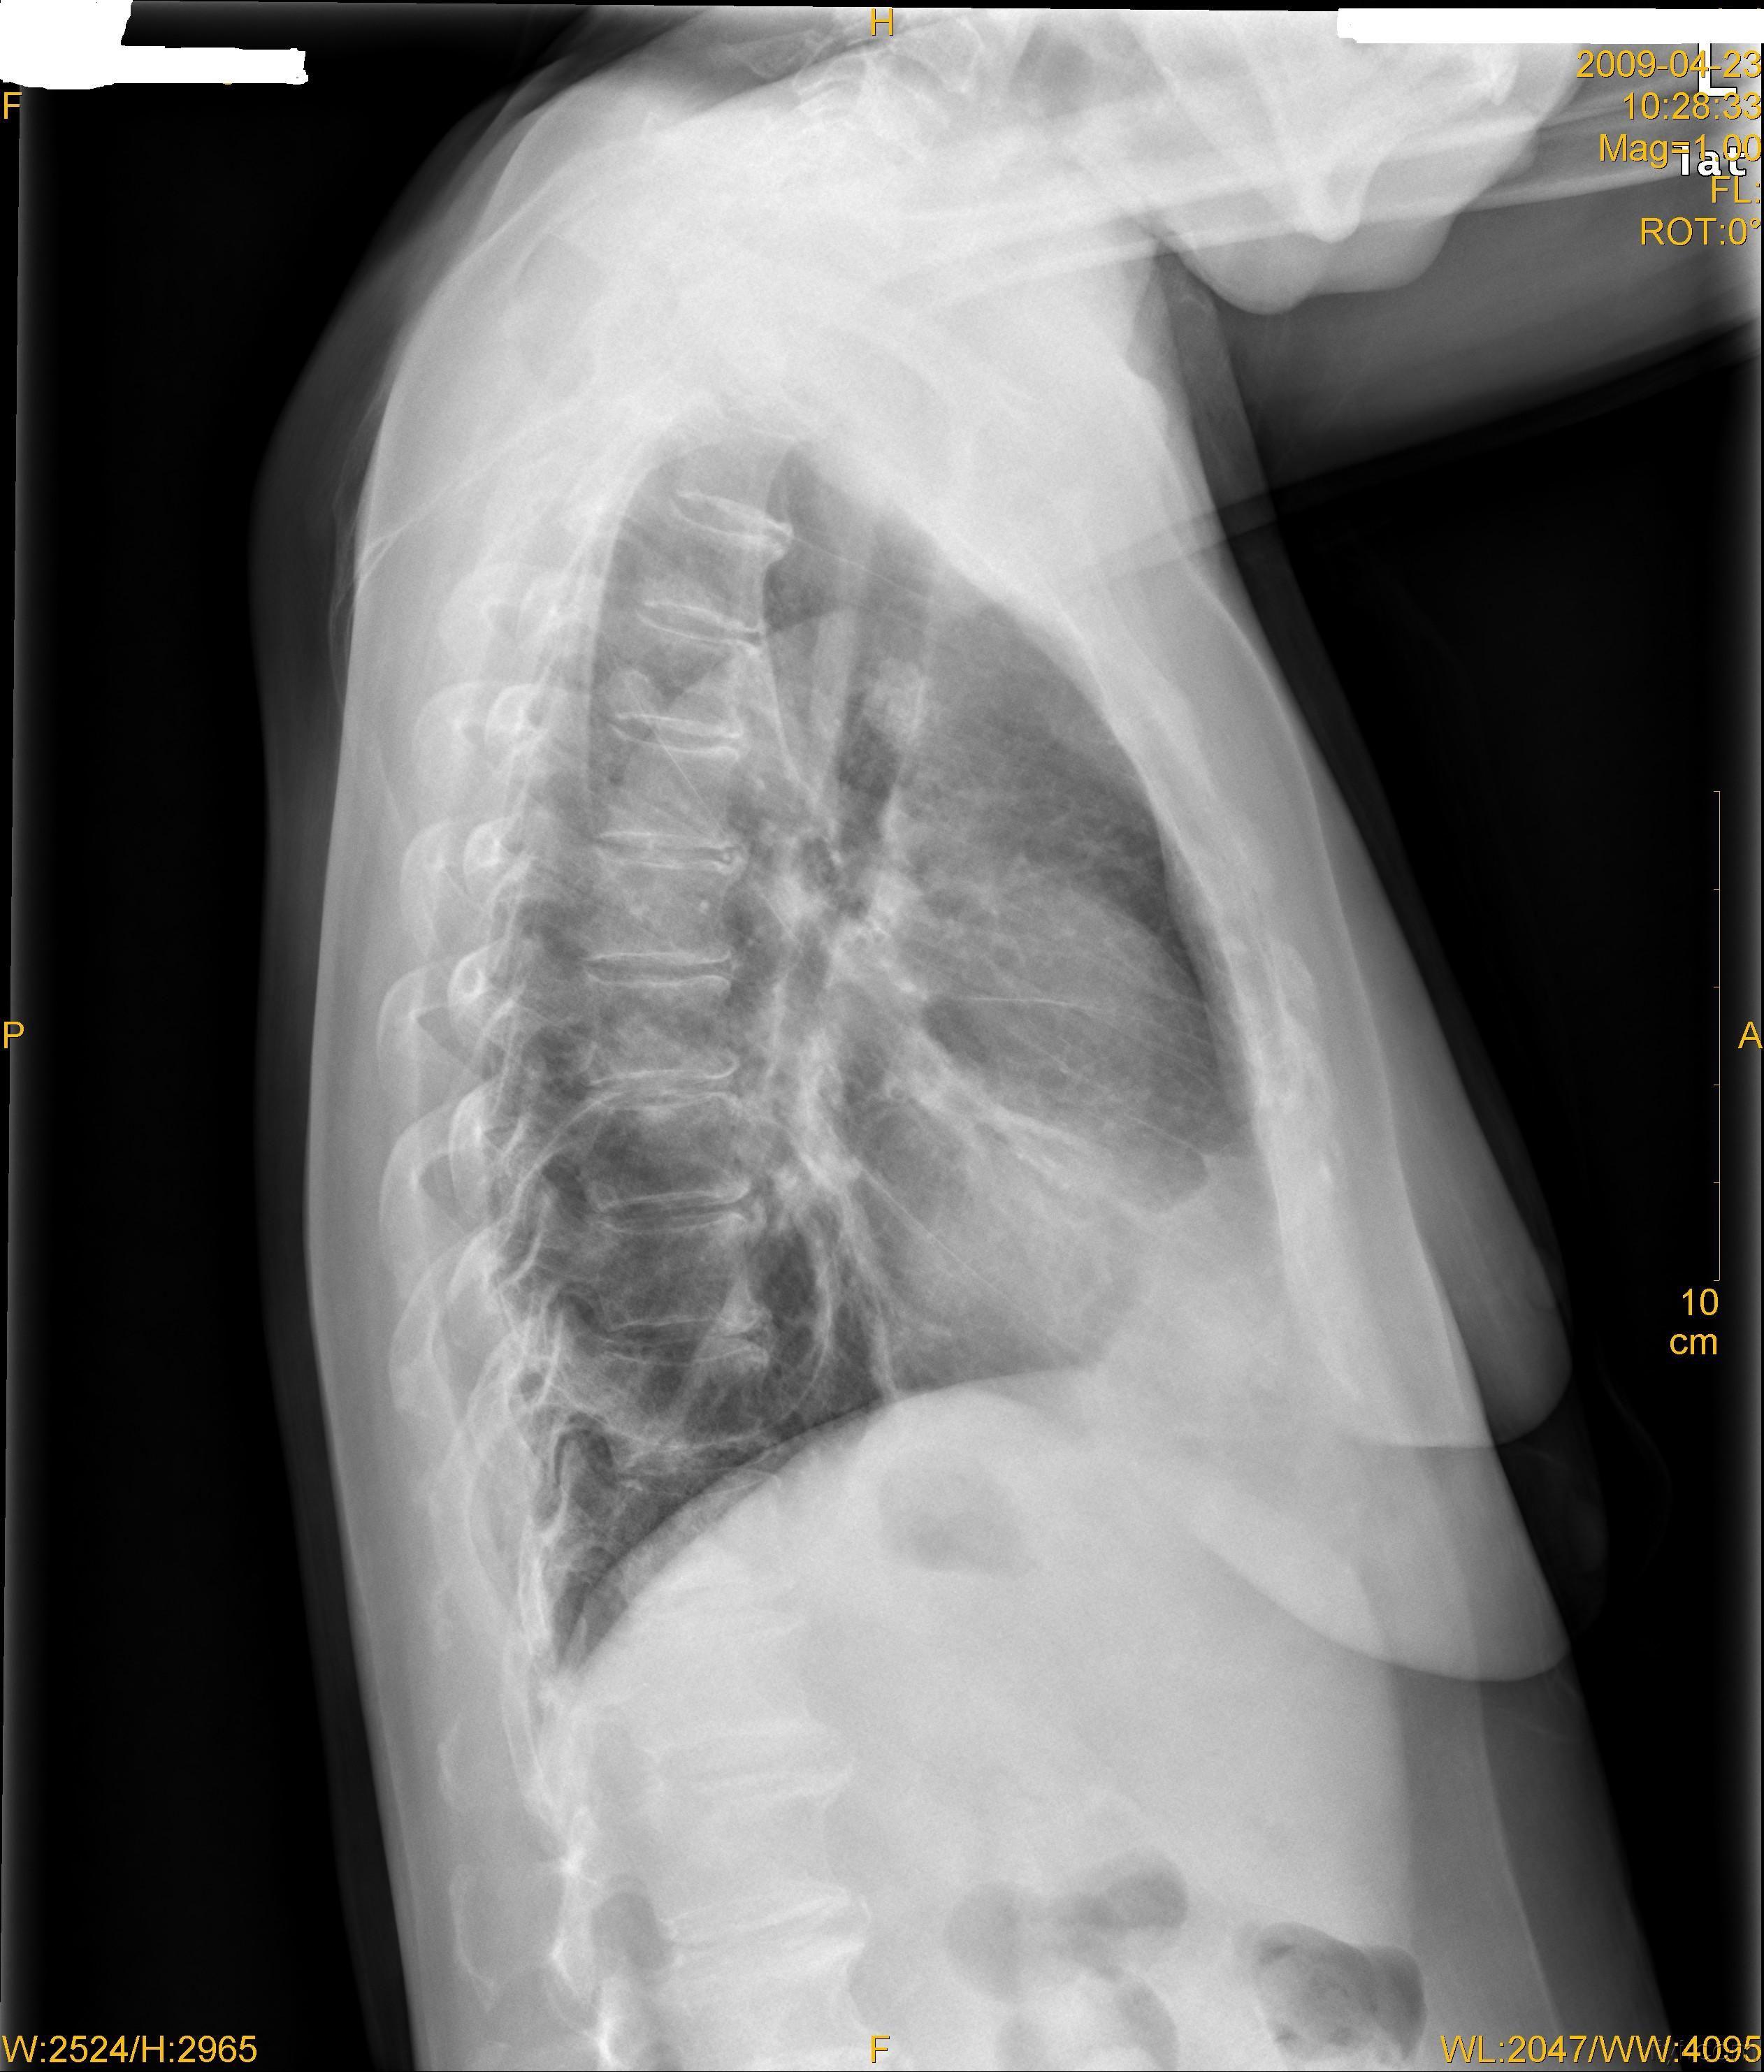 支气管囊肿x线表现图片